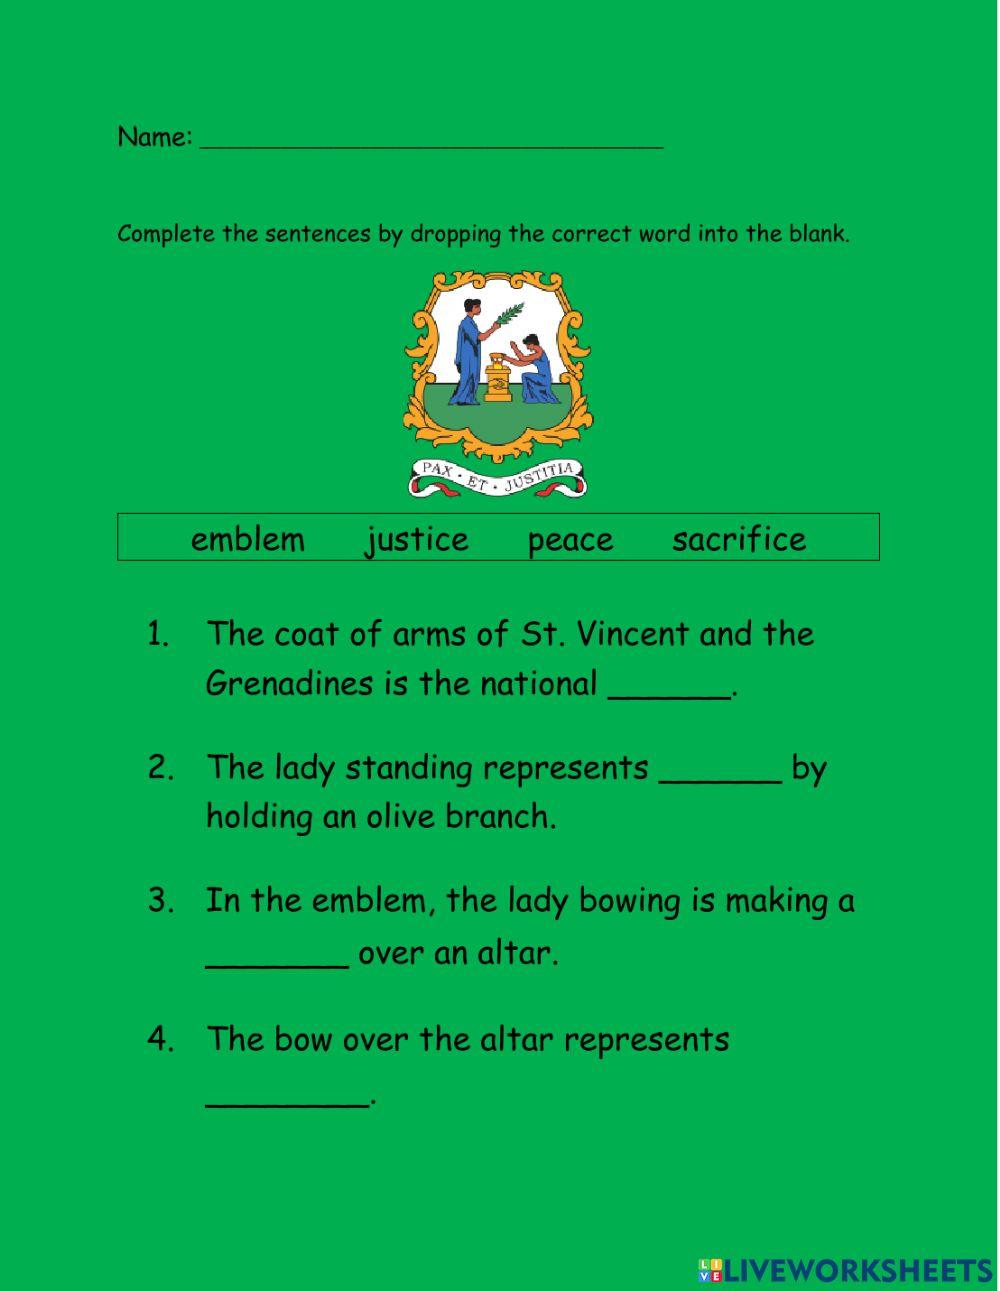 St. Vincent and Grenadine National emblem